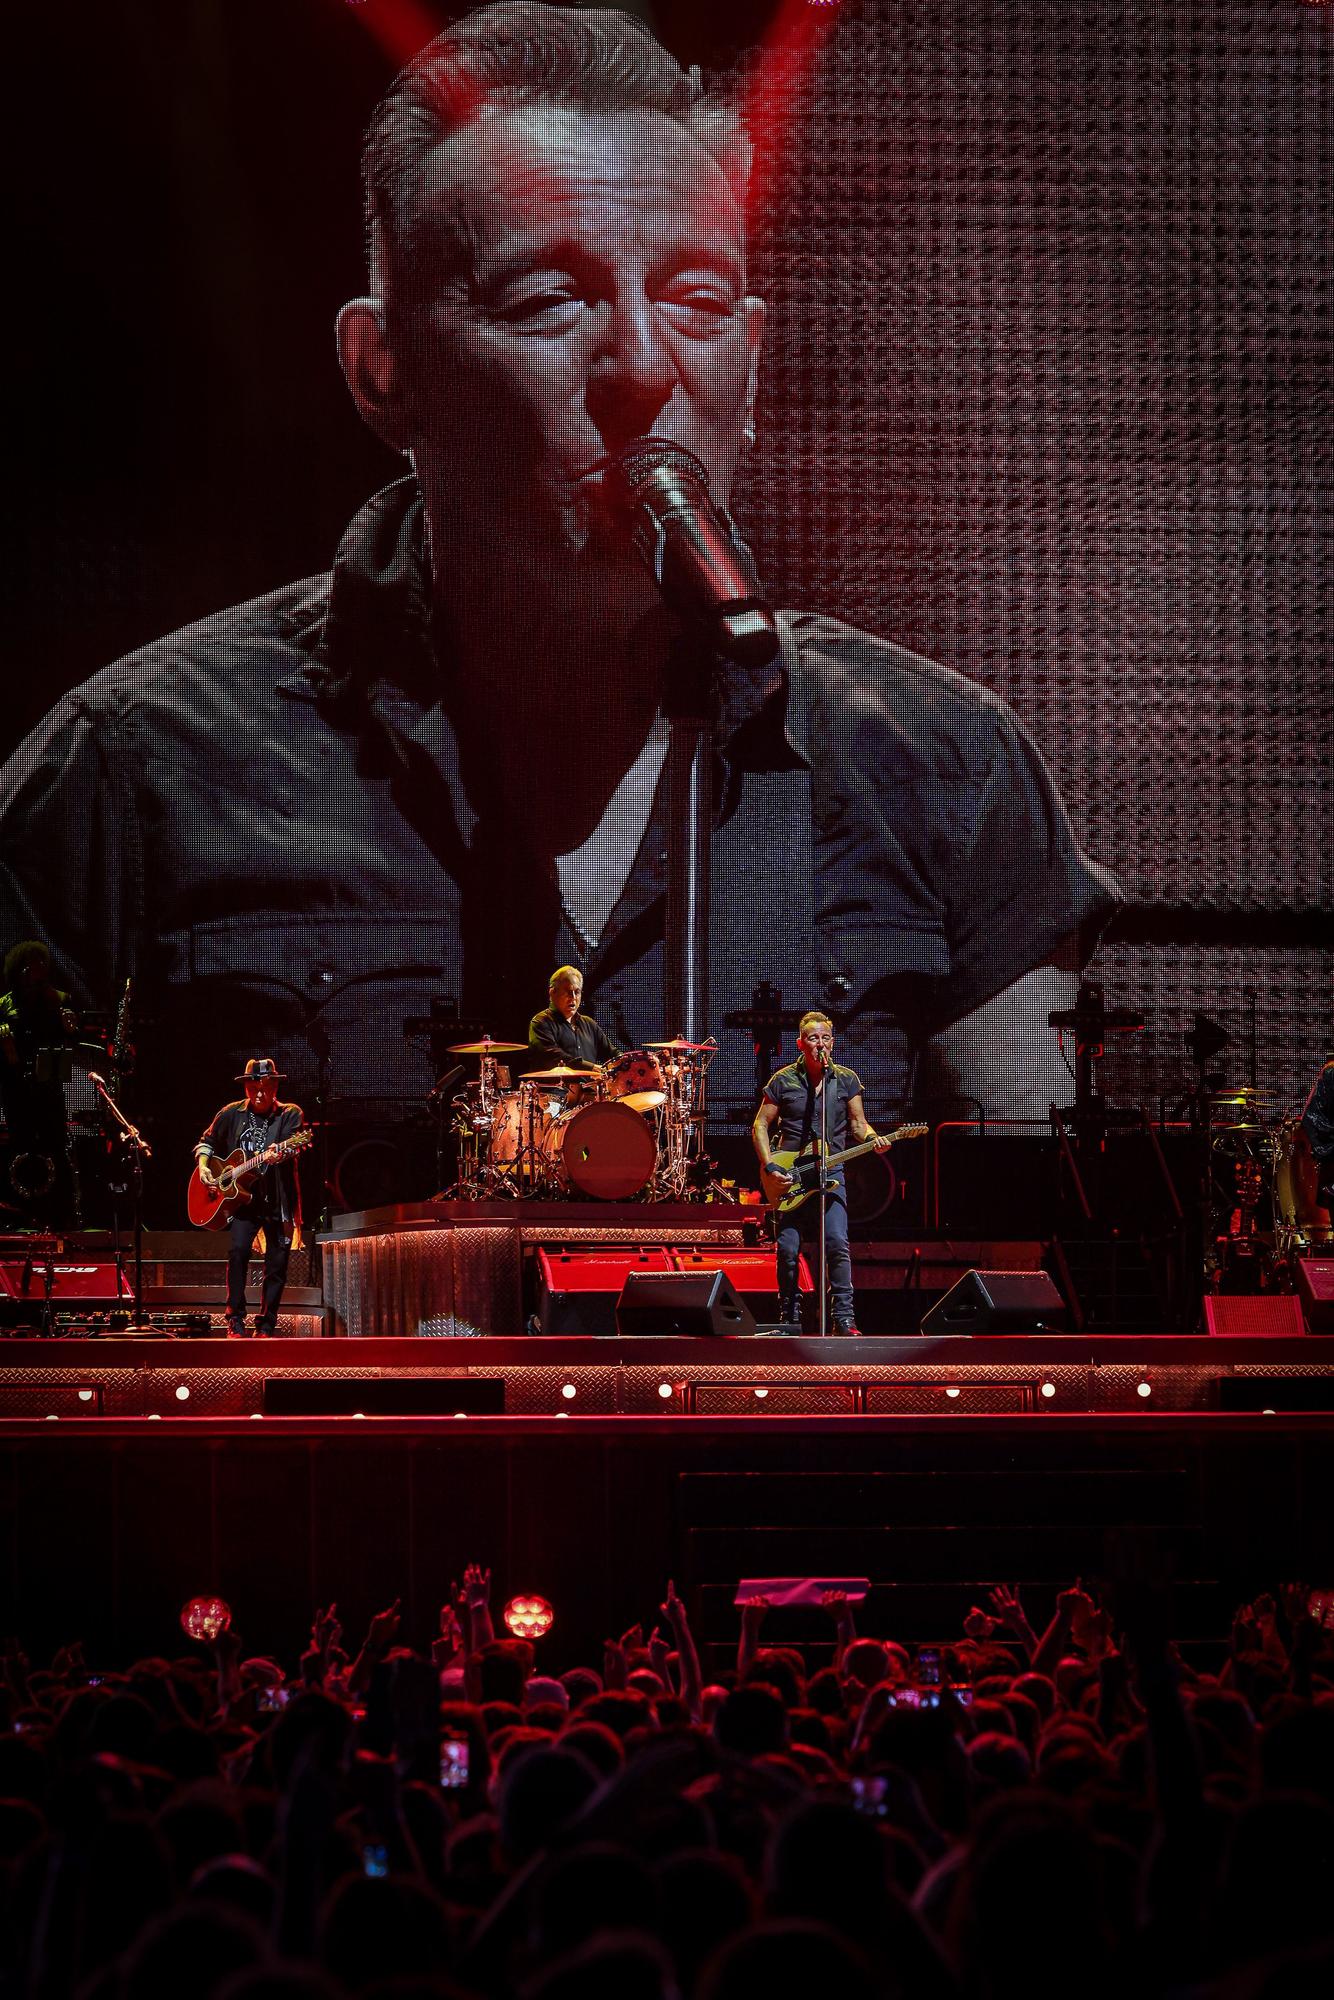 Una imatge de Bruce Springsteen en una pantalla gegant durant el concert a l'Estadi Olímpic de Barcelona